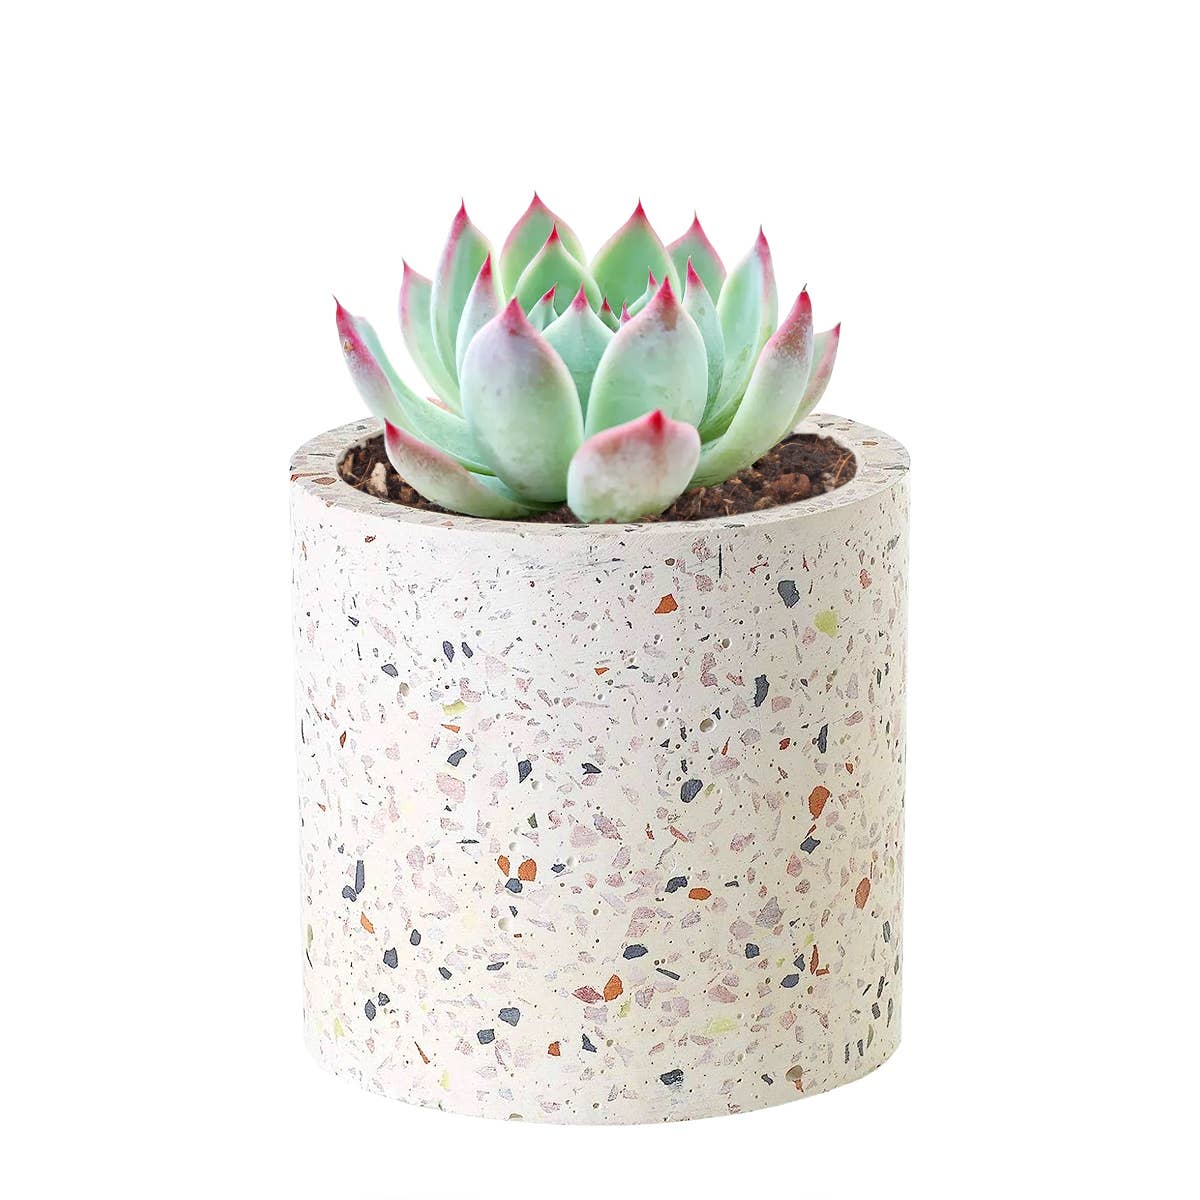 3.25" Terrazzo Pot - Succulent Pots - Ceramic Pots For Plant